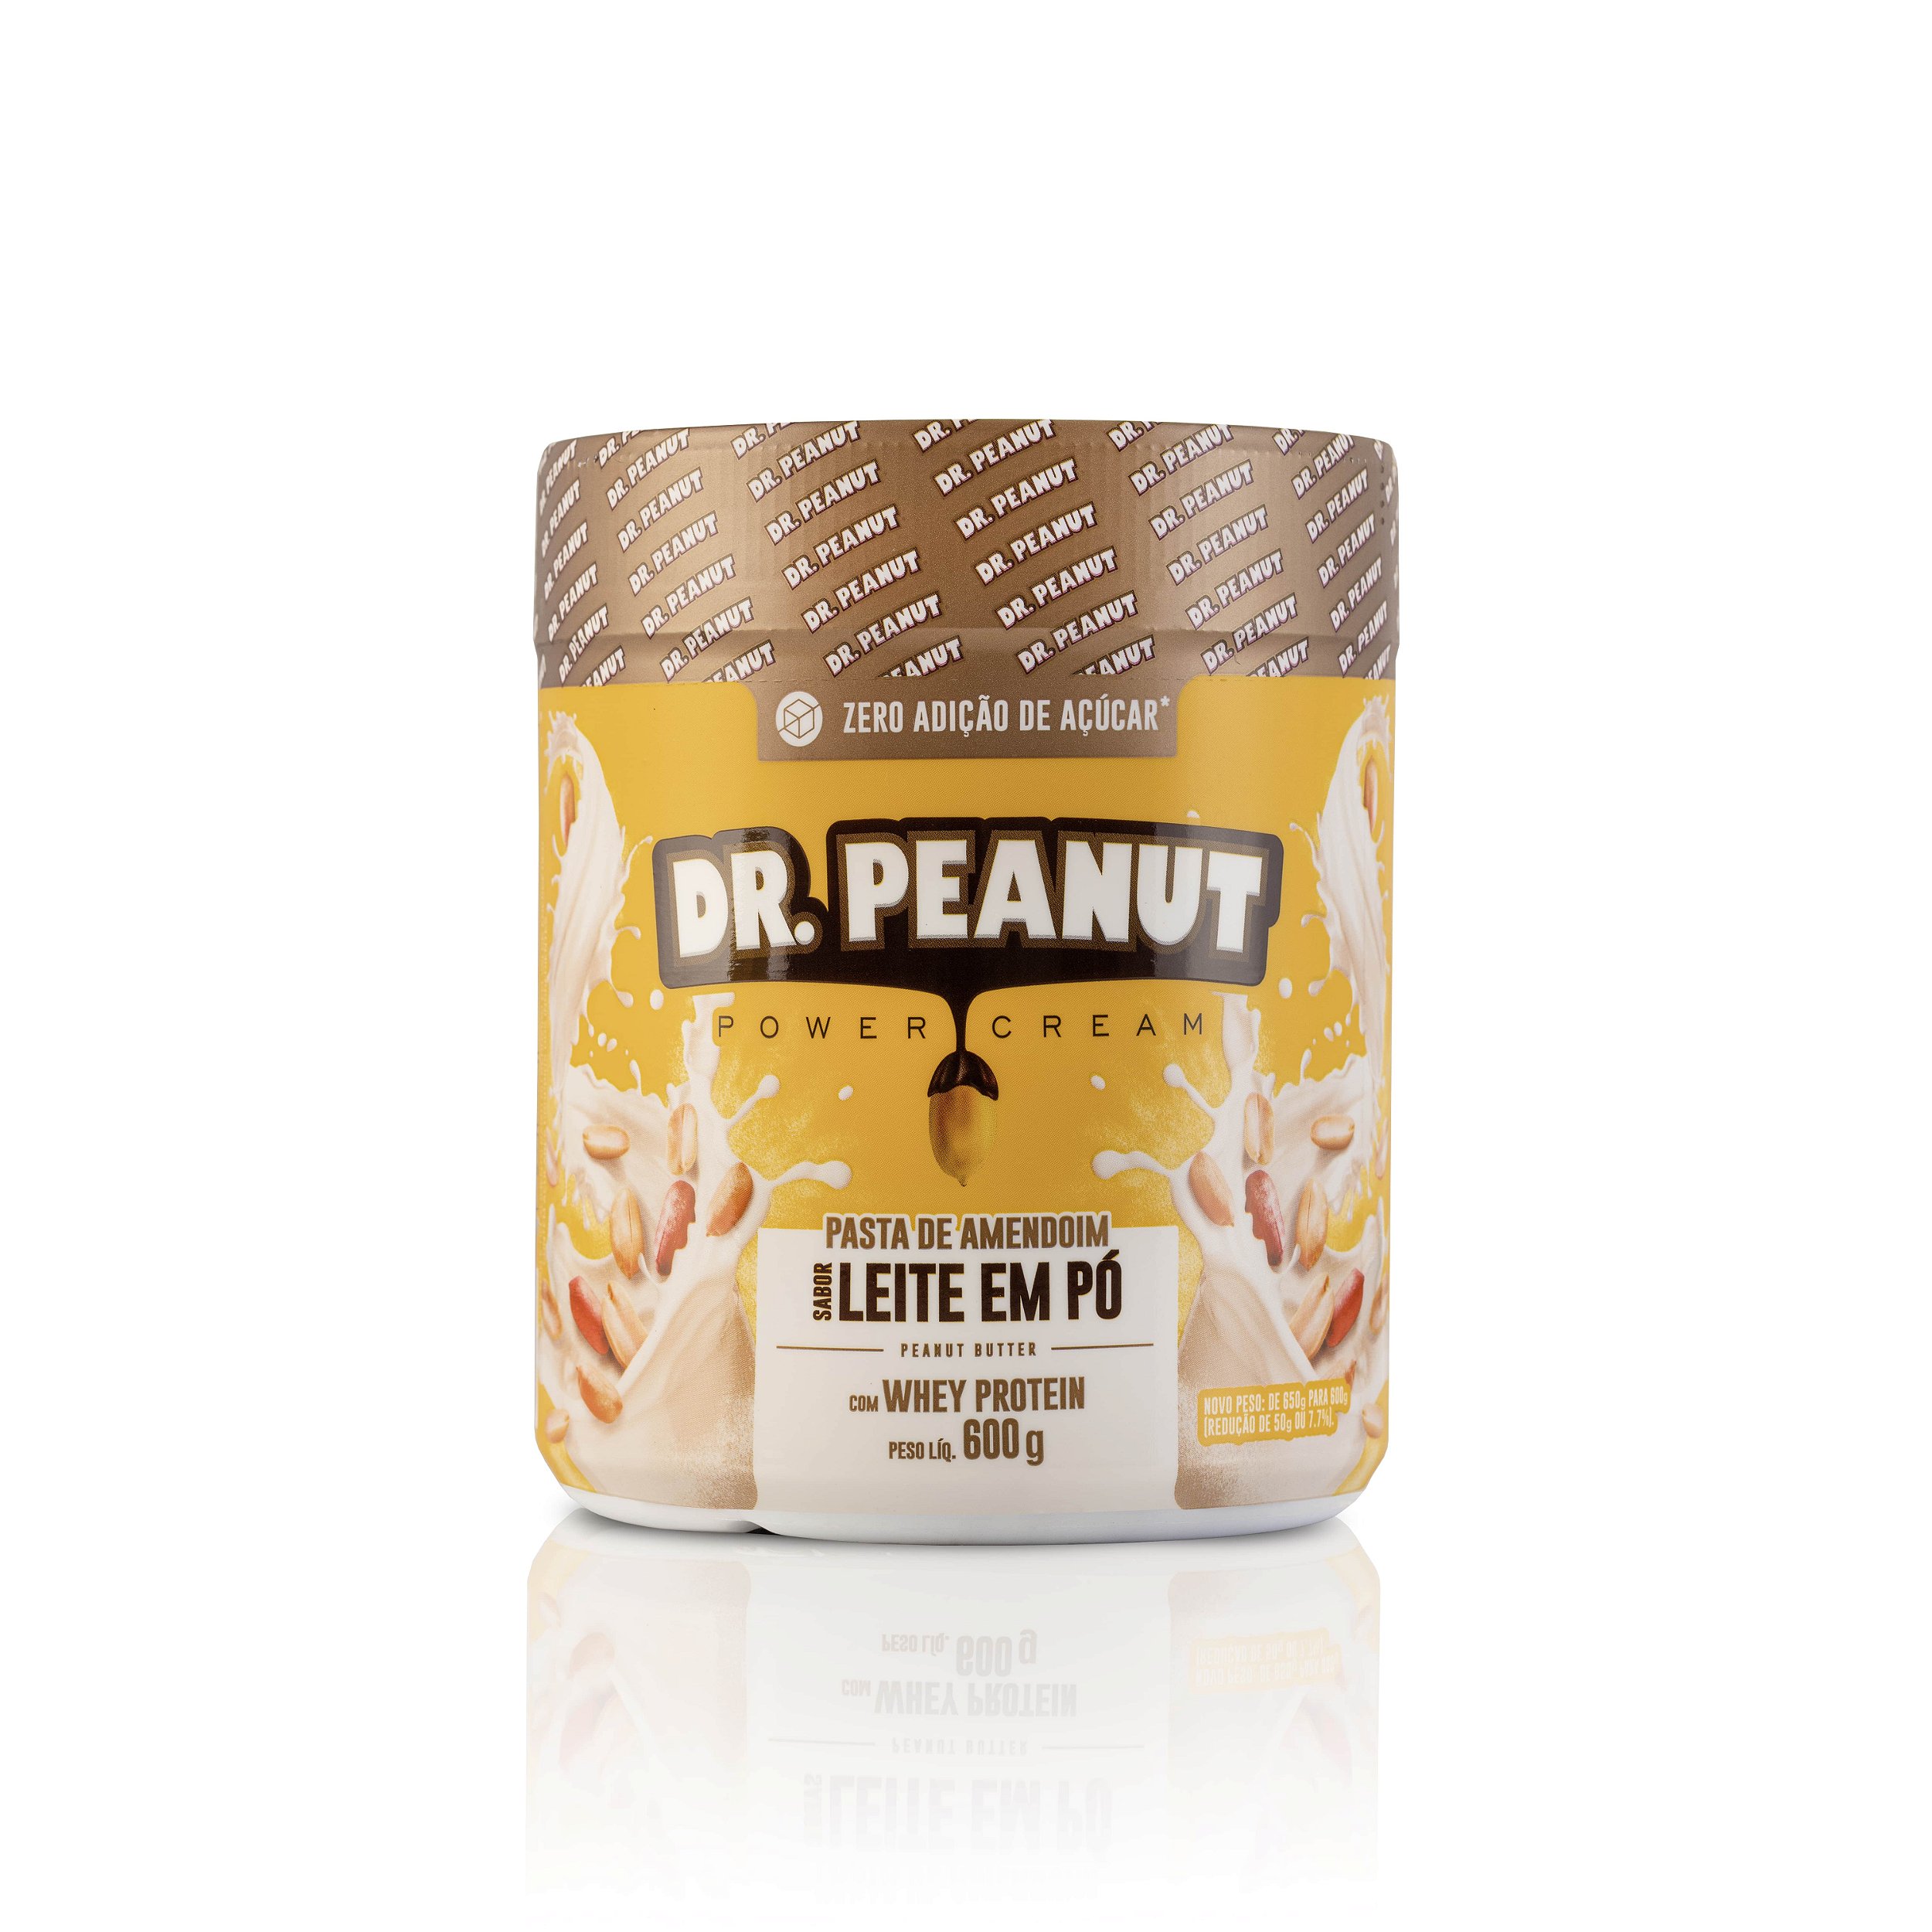 Pasta de Amendoim Leite em pó - Dr. Peanut  Loja do Empório Natural - Loja  do Empório Natural - Sua vida mais saudável